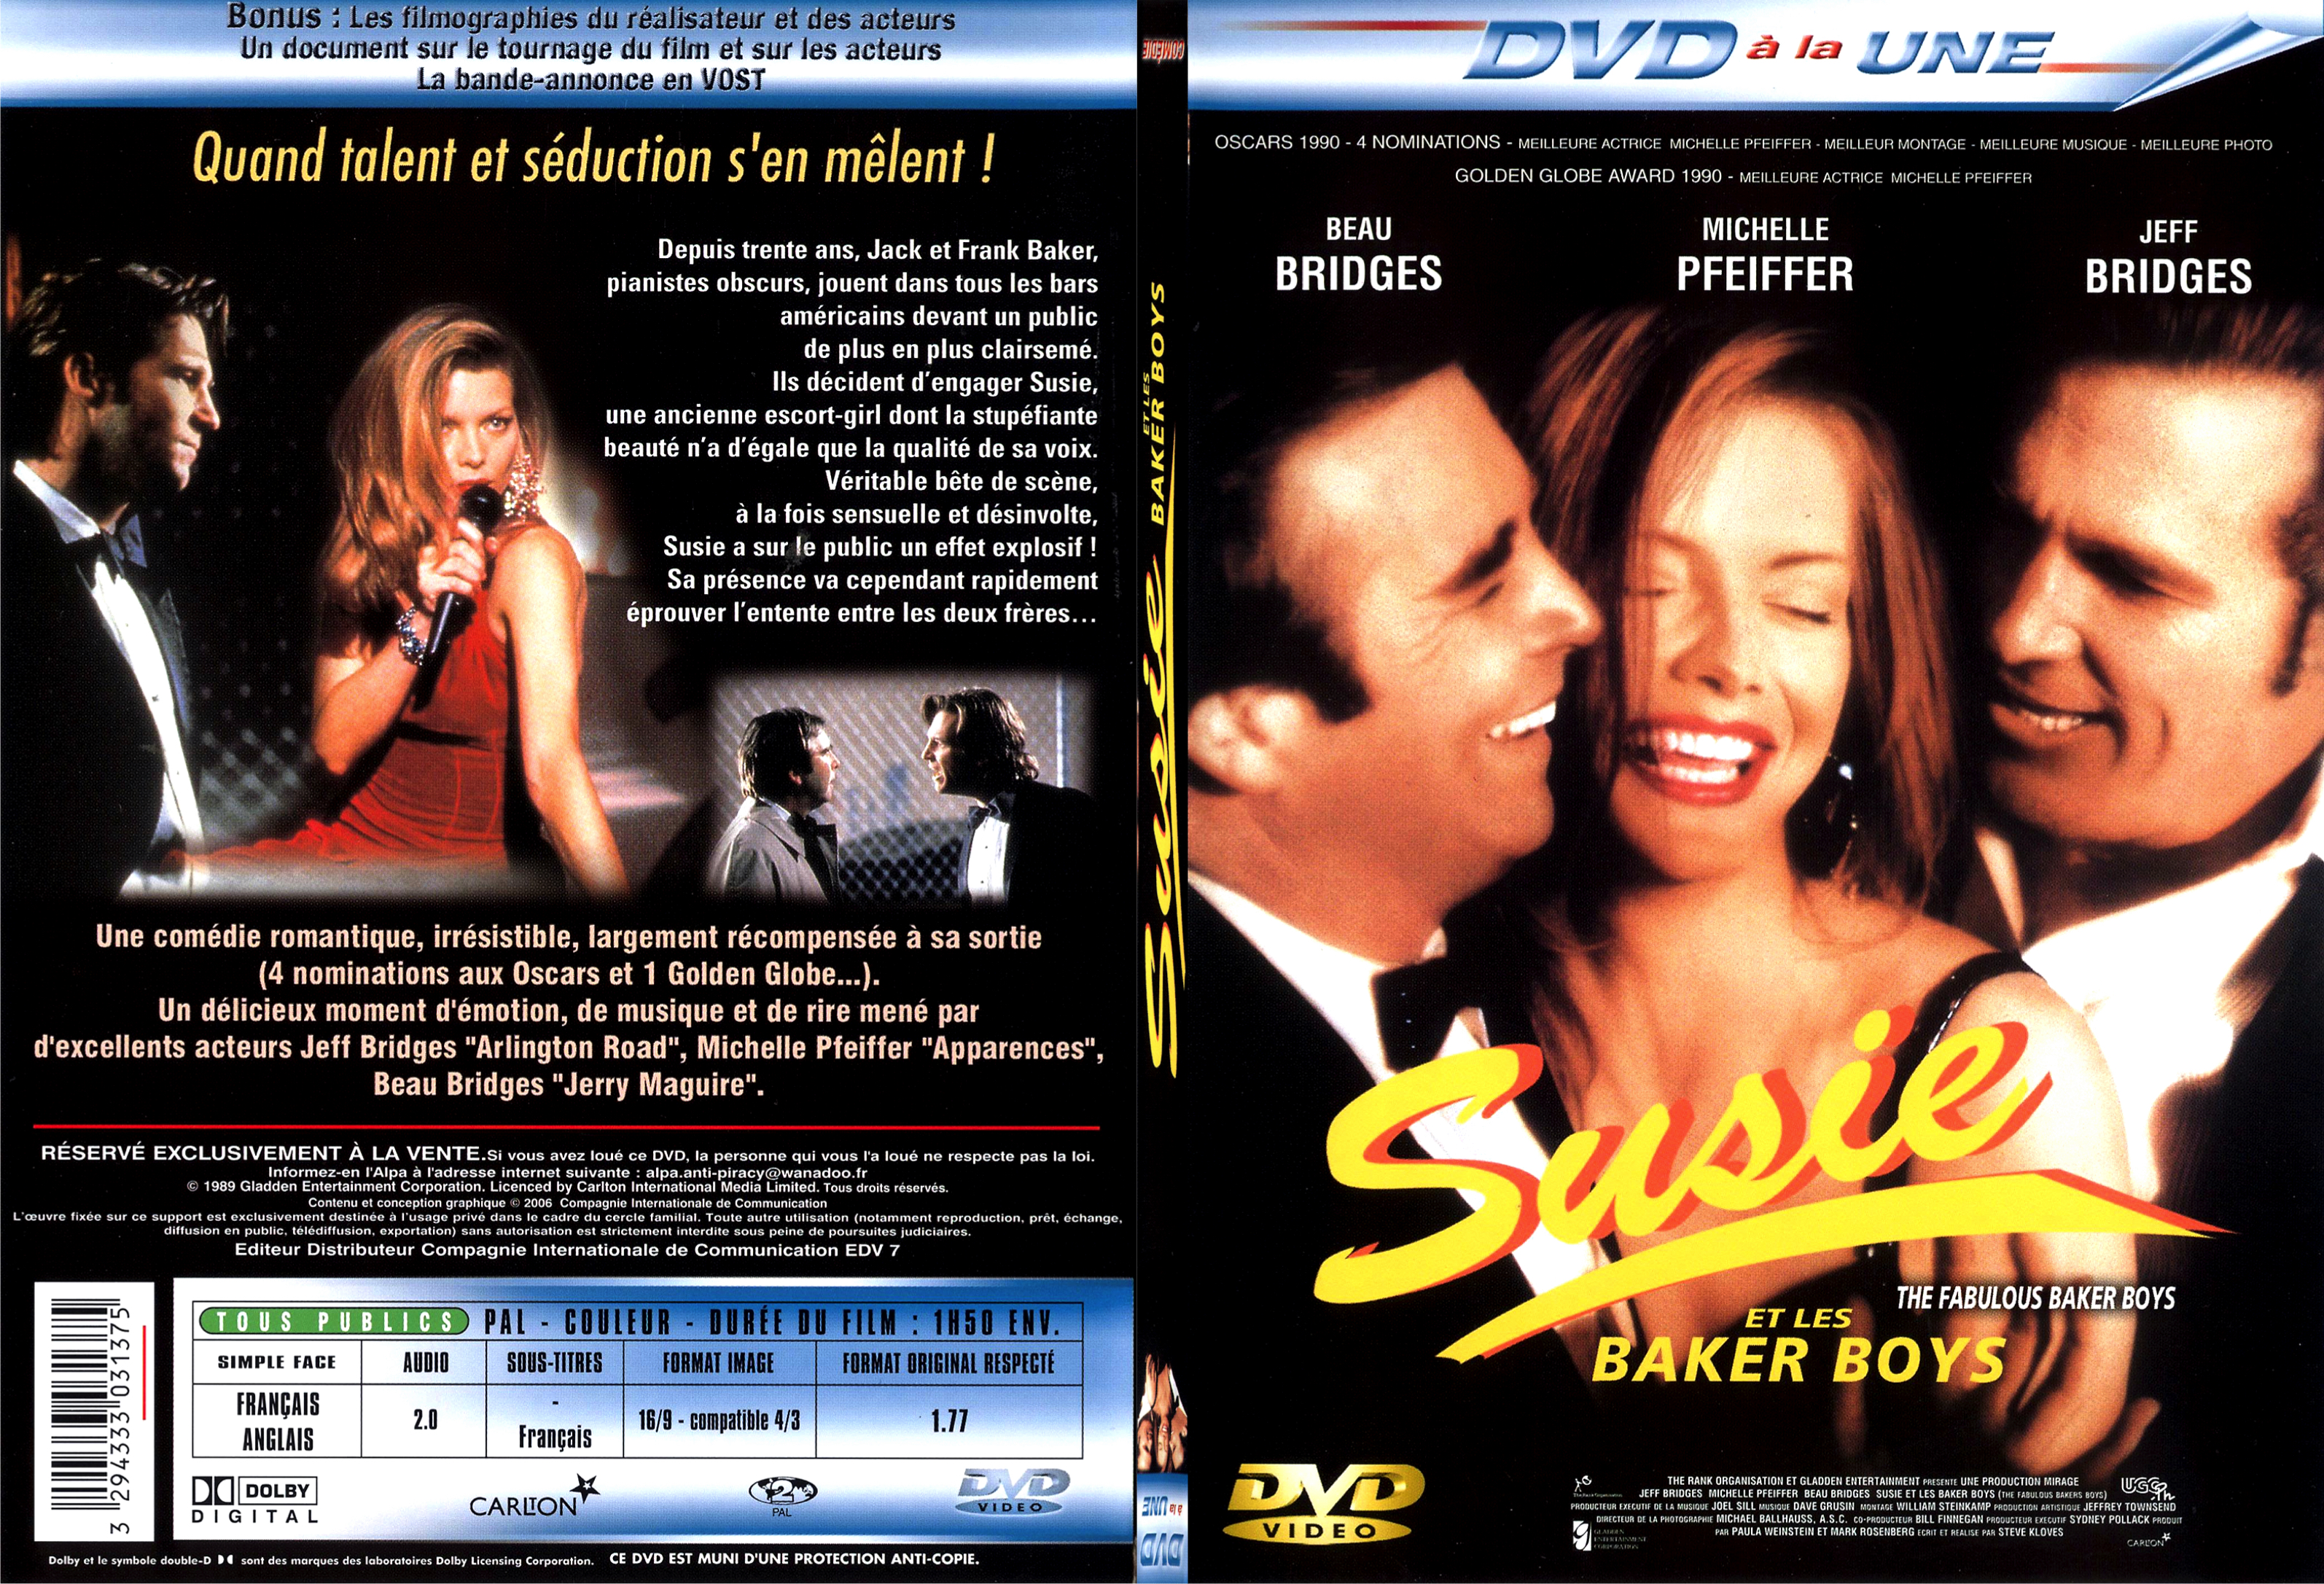 Jaquette DVD Susie et les Baker Boys - SLIM